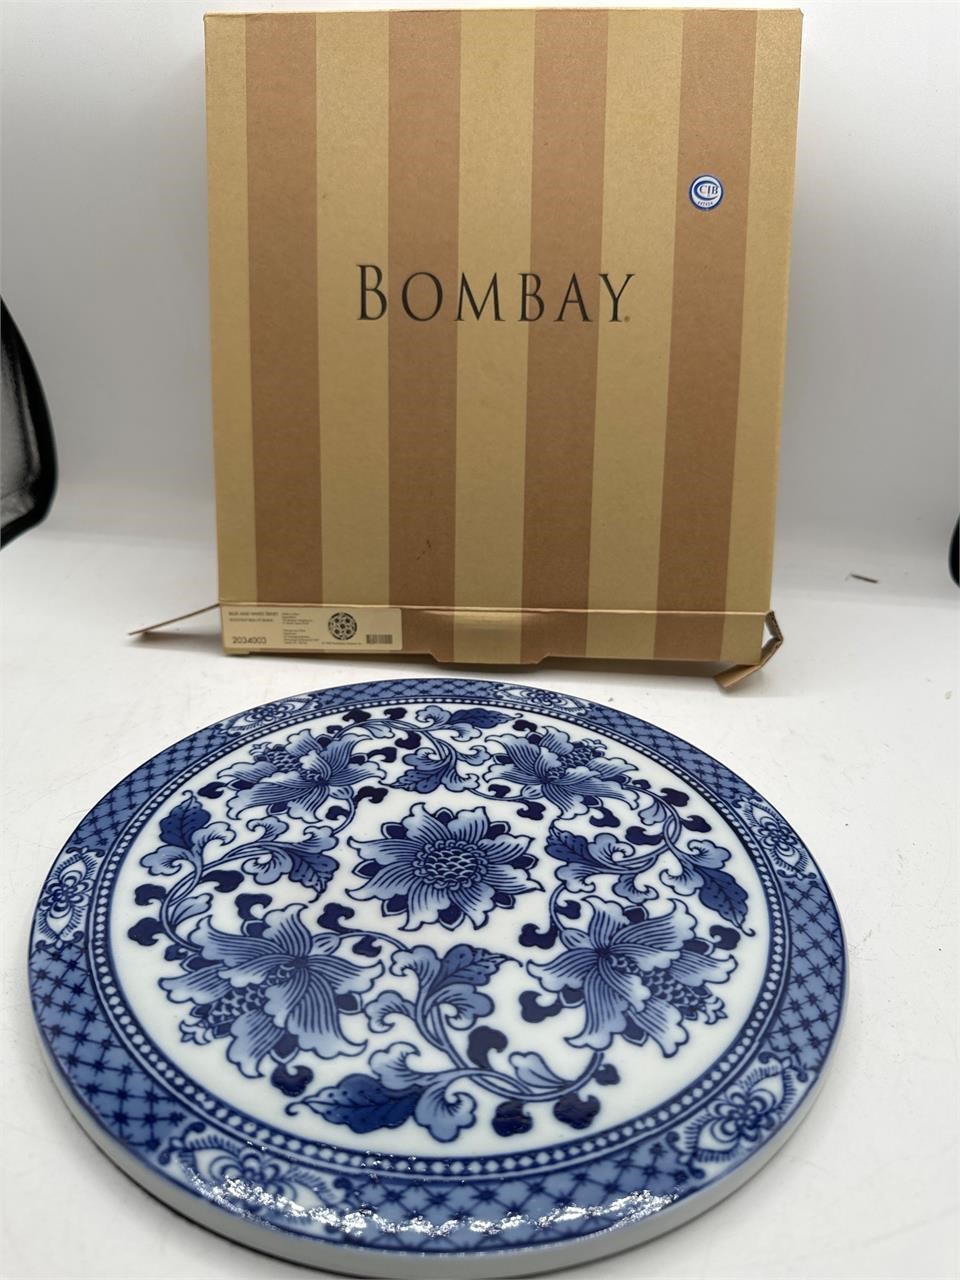 Bombay blue and white trivet